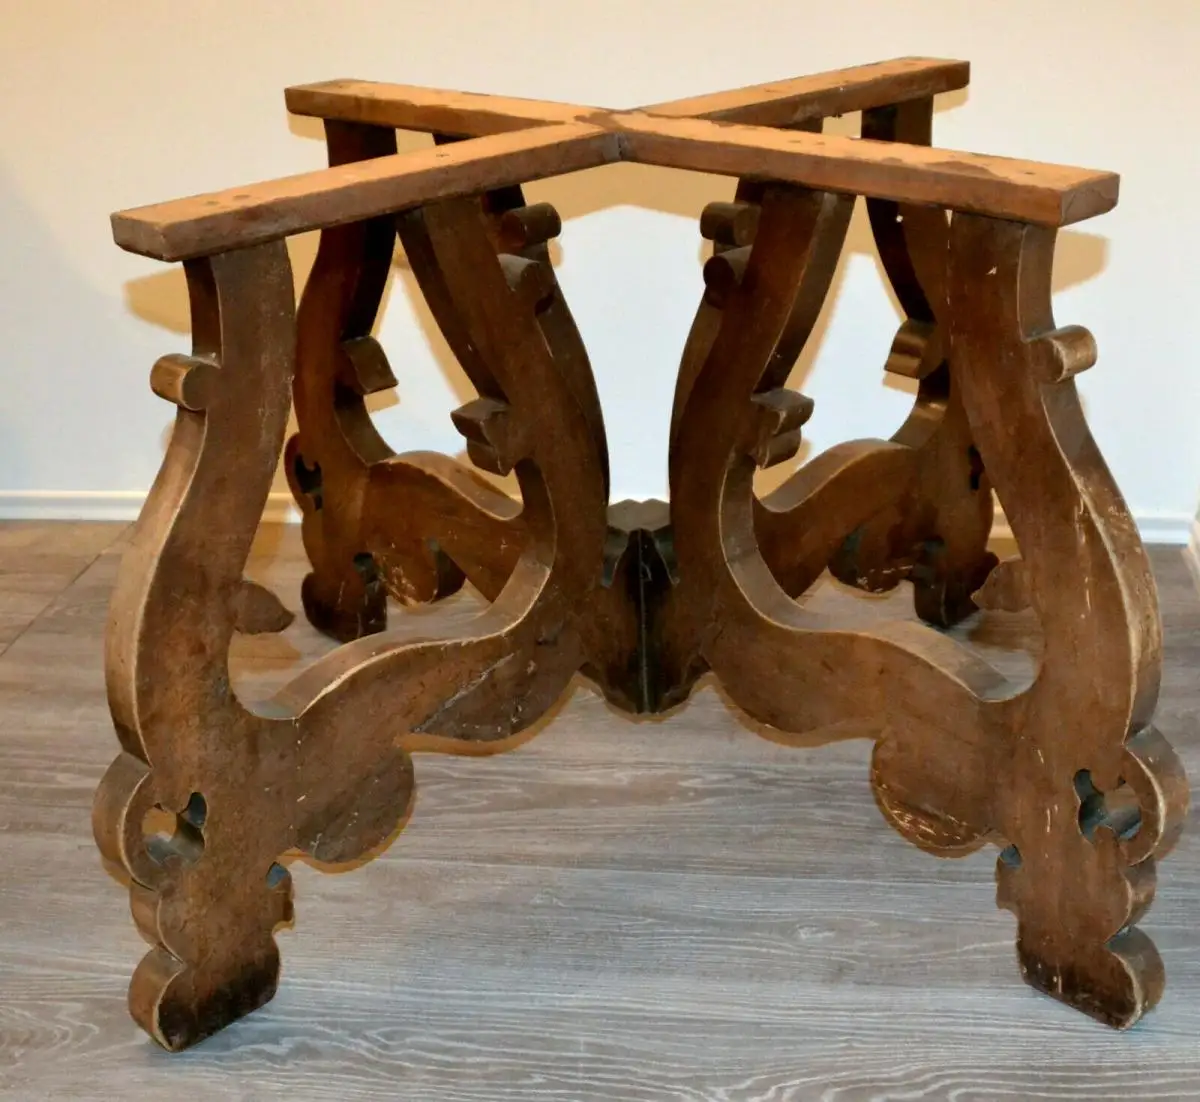 Möbel,runder Bauerntisch, alter Barockfuss, neue Platte,für Restaurator/Bastler 2